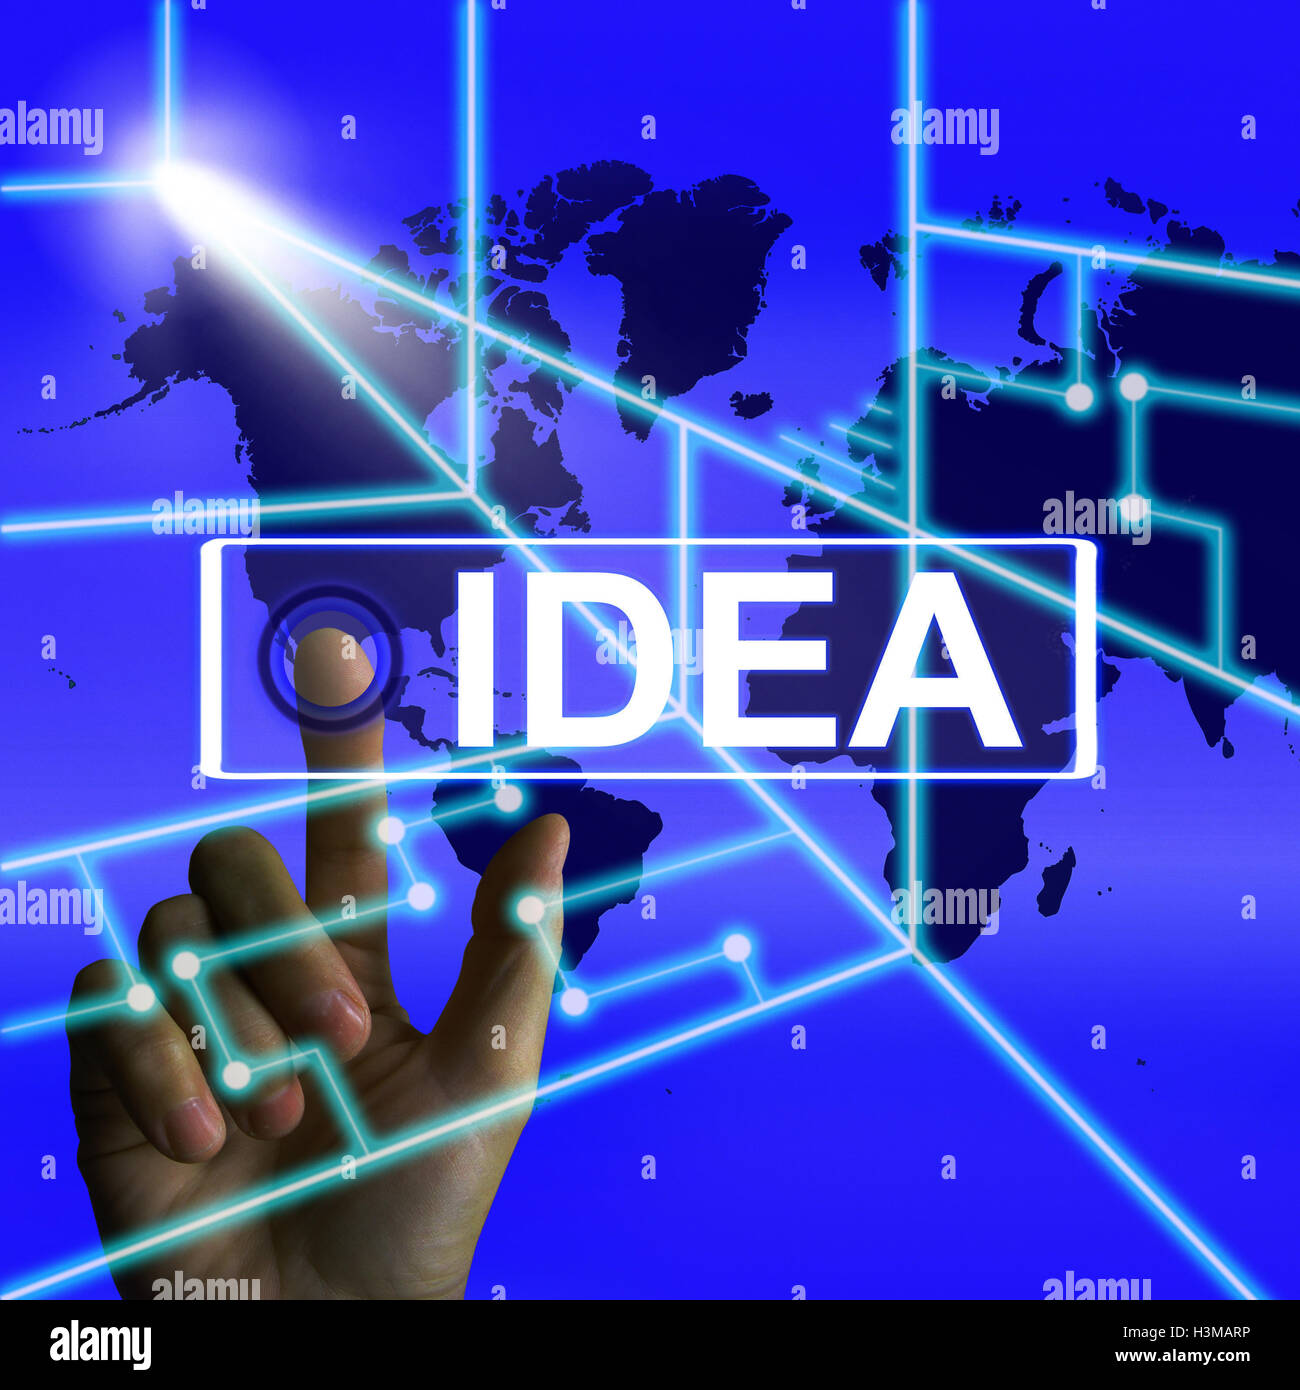 Idée écran signifie que dans le monde entier Concept pensé ou d'Idées Banque D'Images